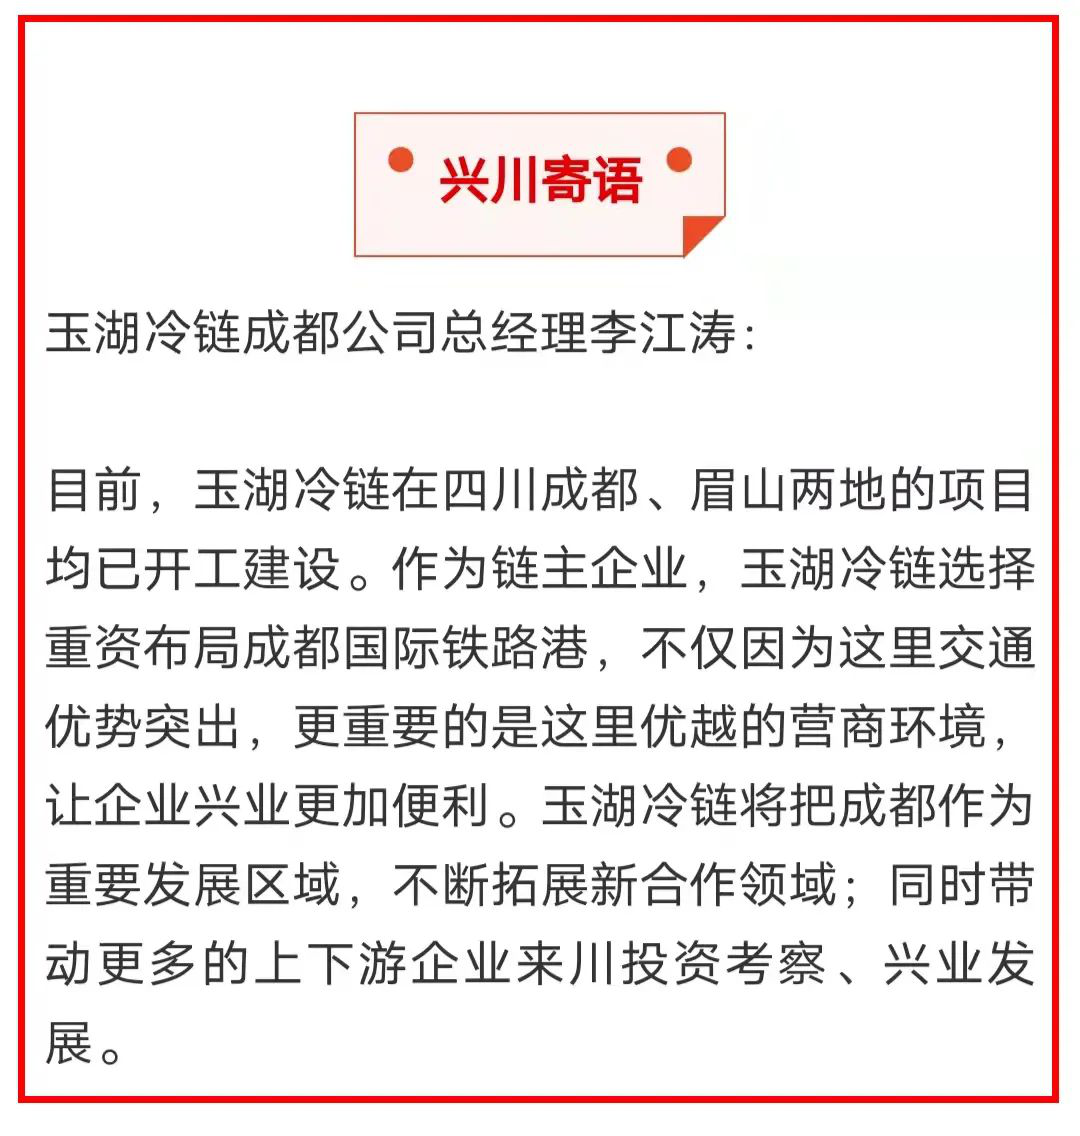 四川日报报道玉湖冷链，扩大开放共促发展